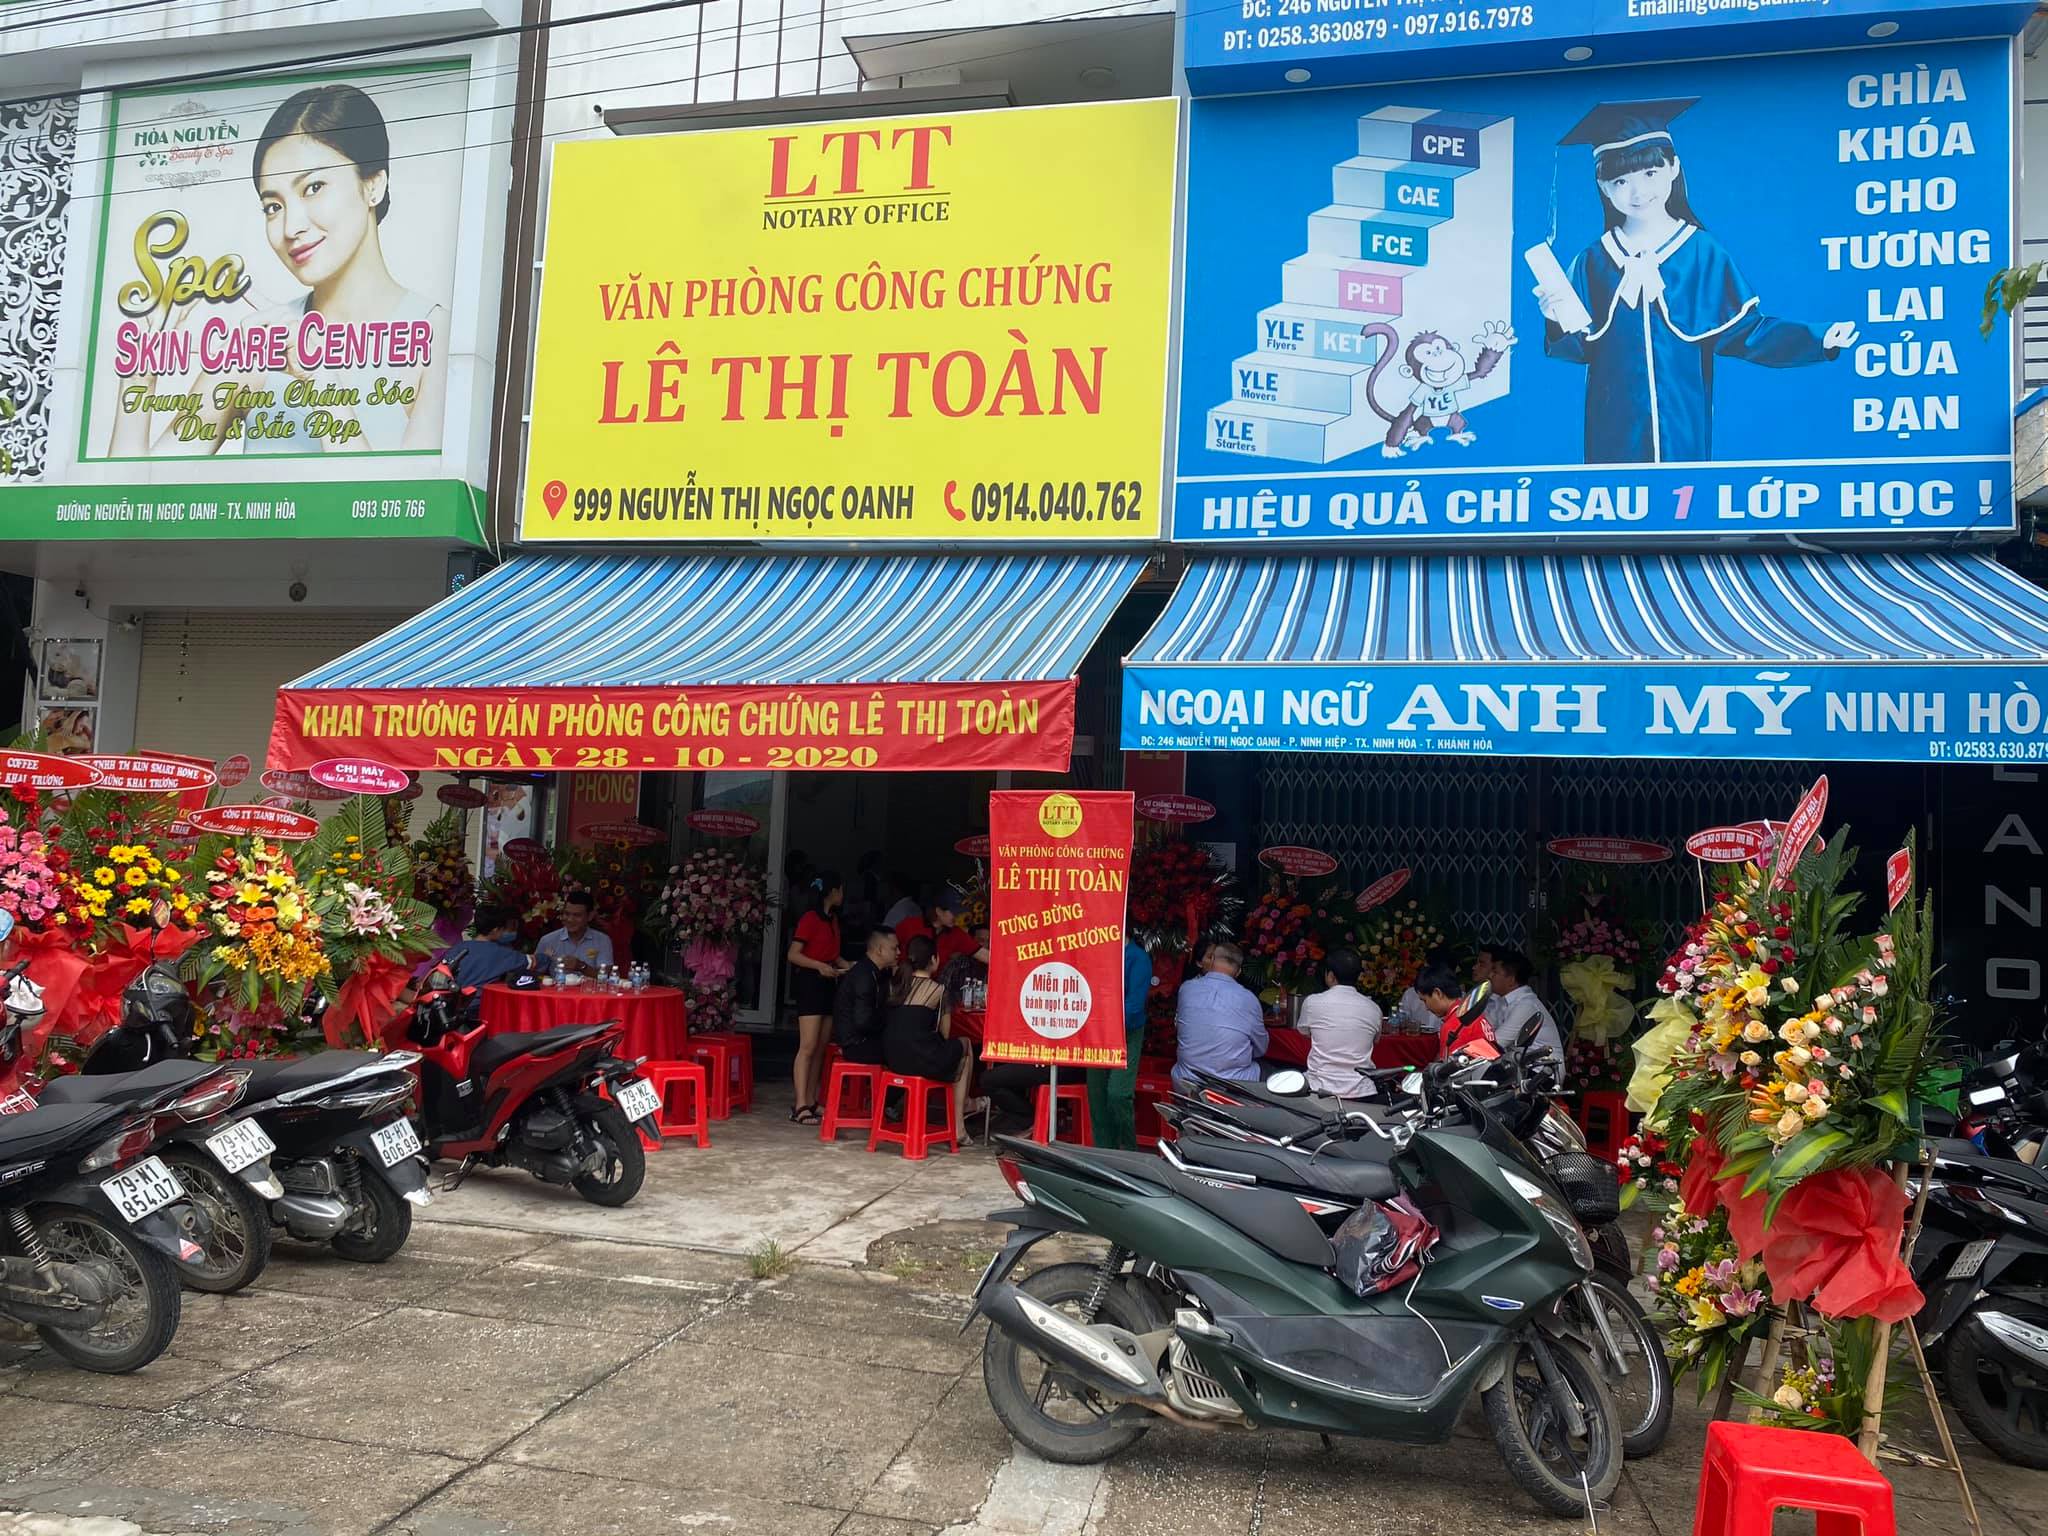 Liên hệ Văn phòng công chứng Lê Thị Toàn thông tin địa chỉ số điện thoại